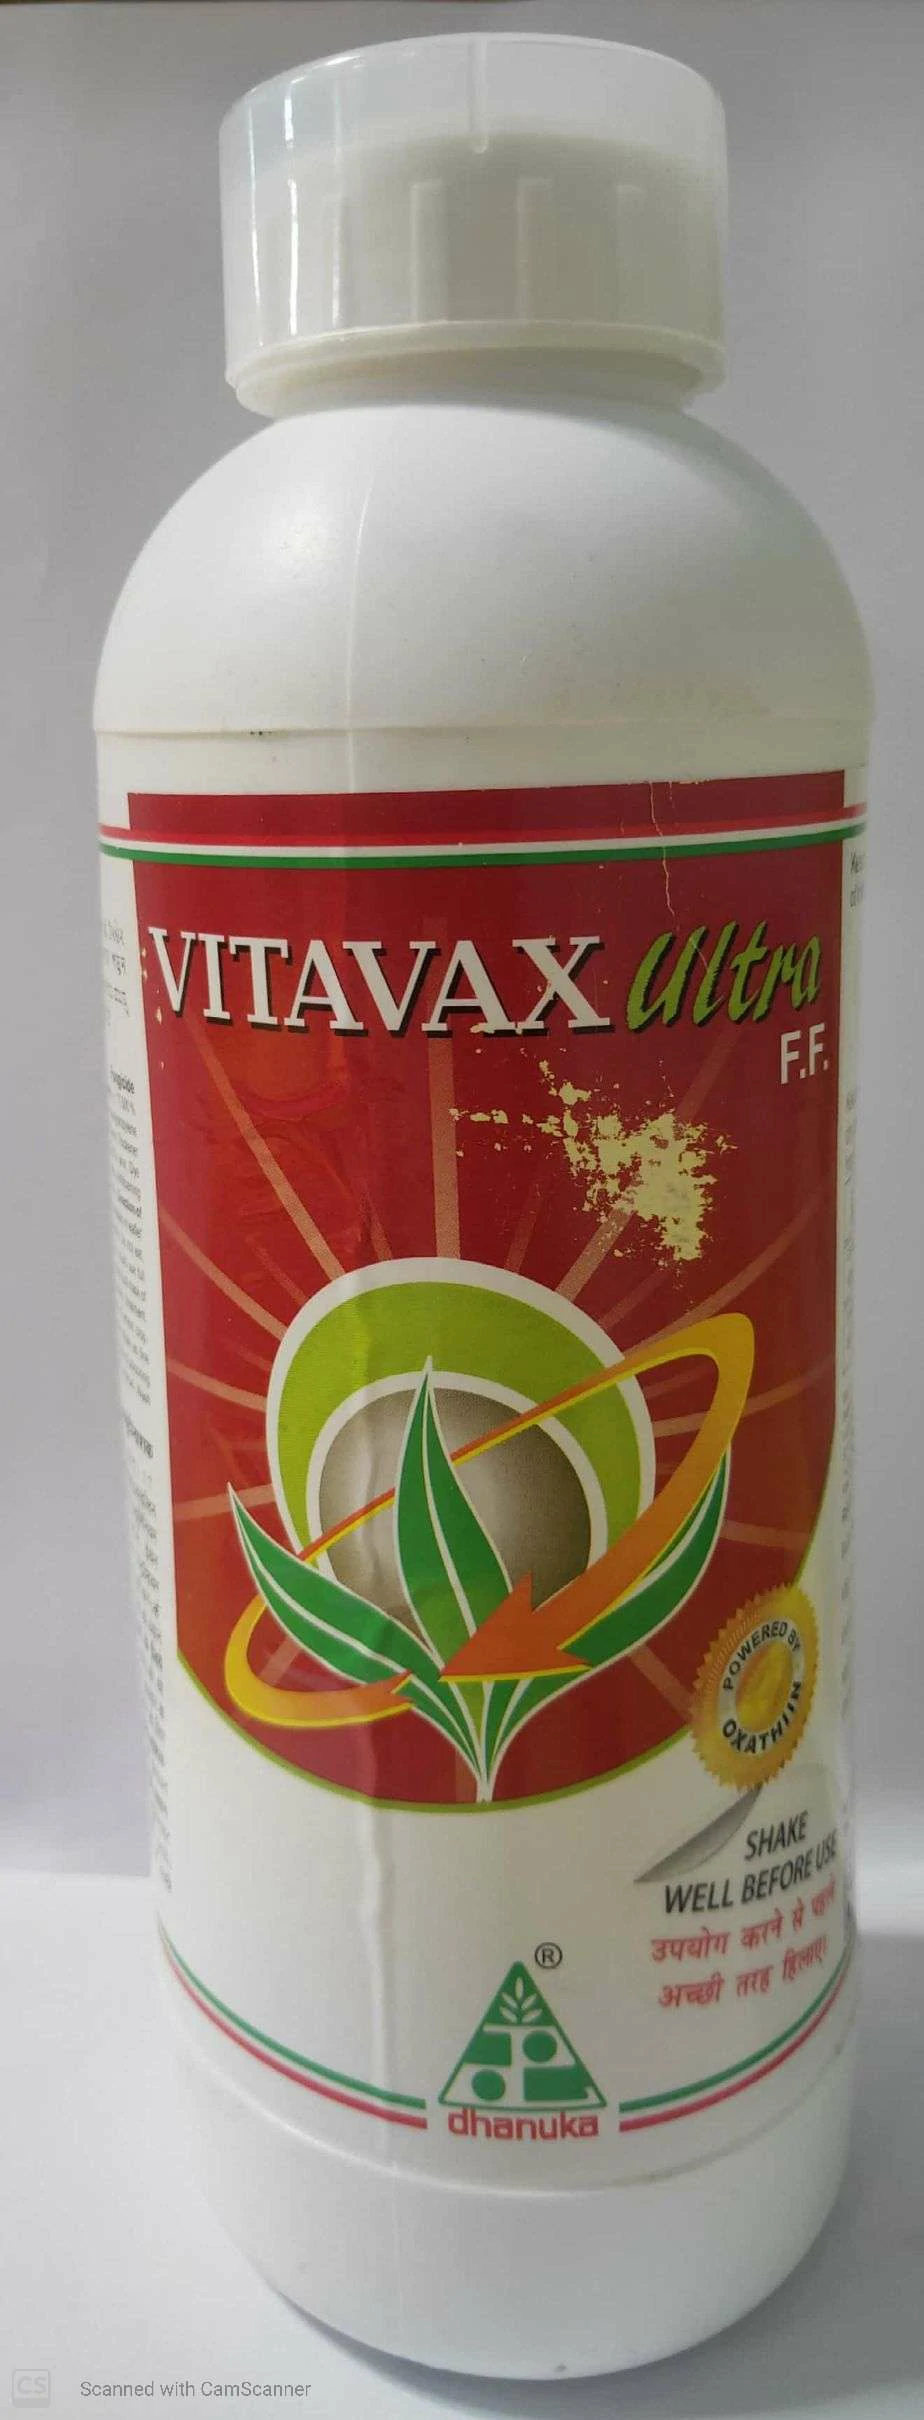 Vitavax Ultra Dhanuka